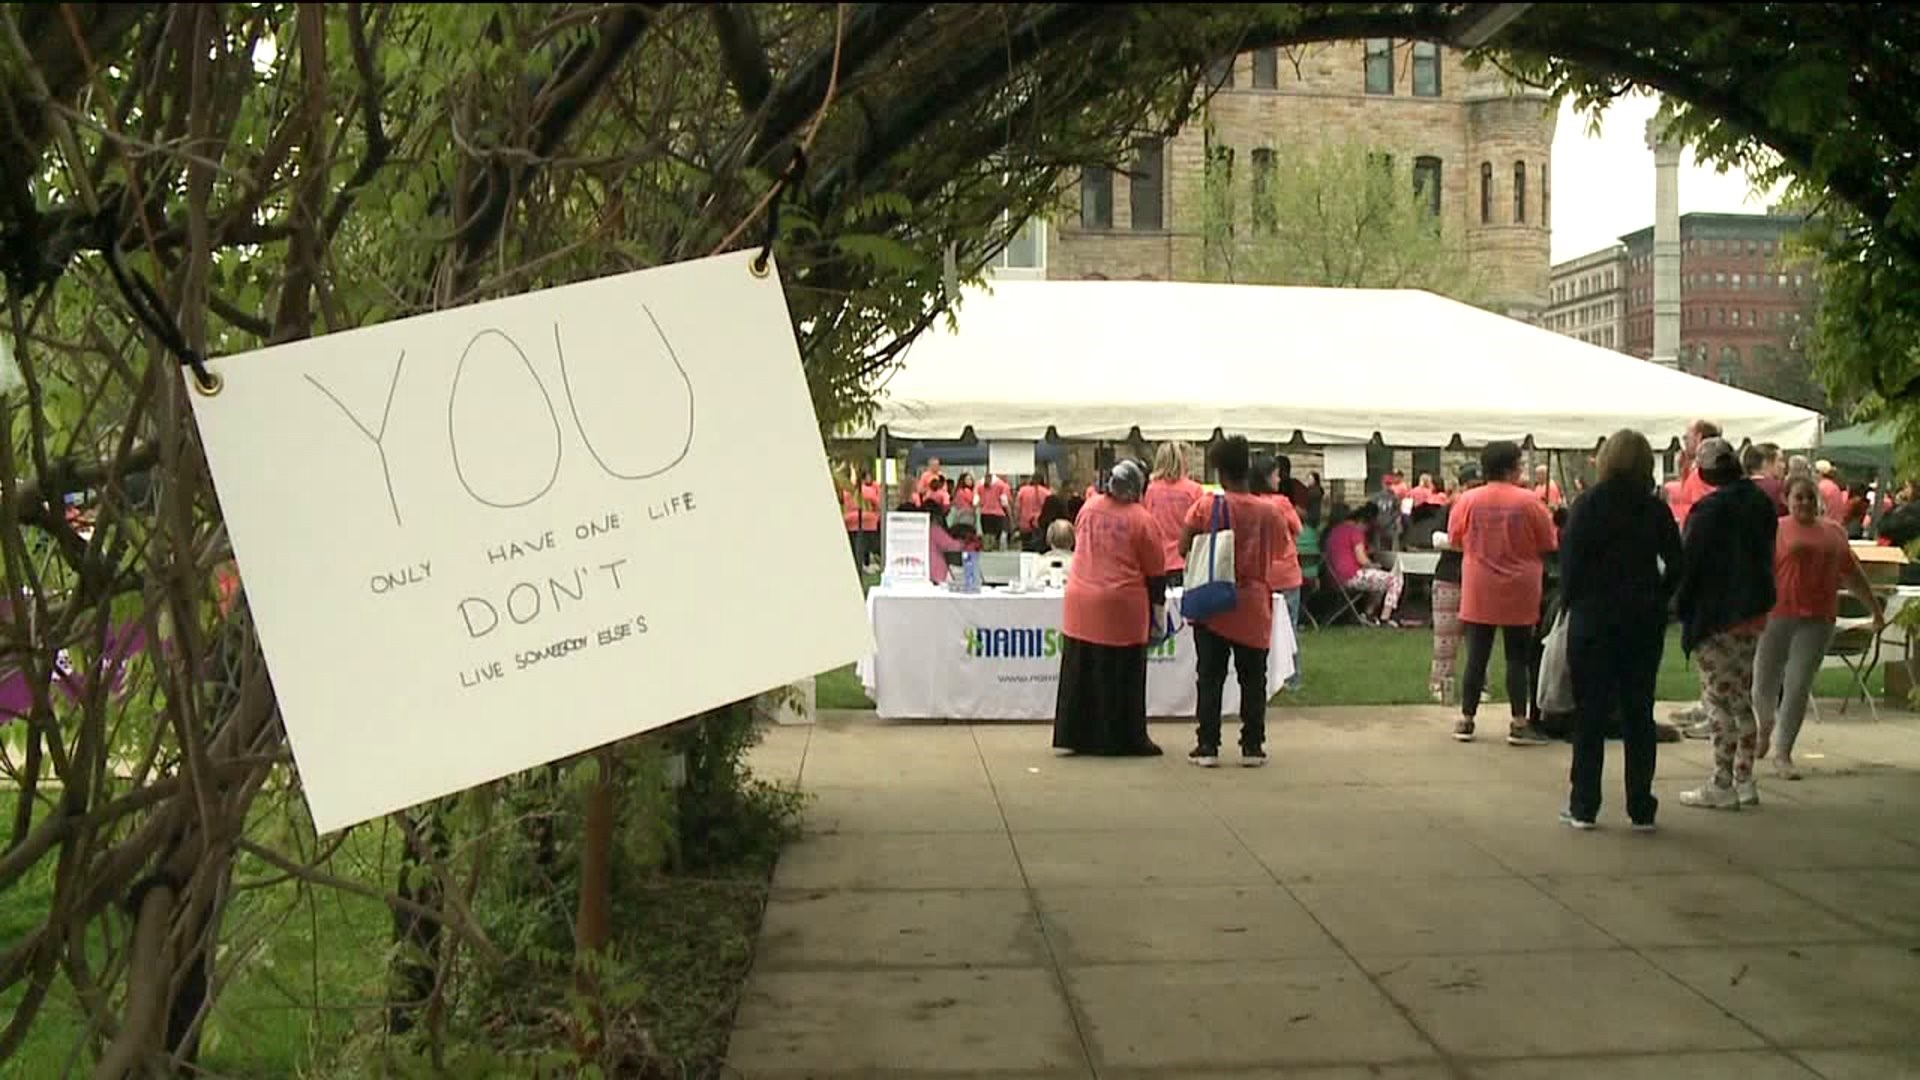 Mental Health Awareness Walk Held in Scranton